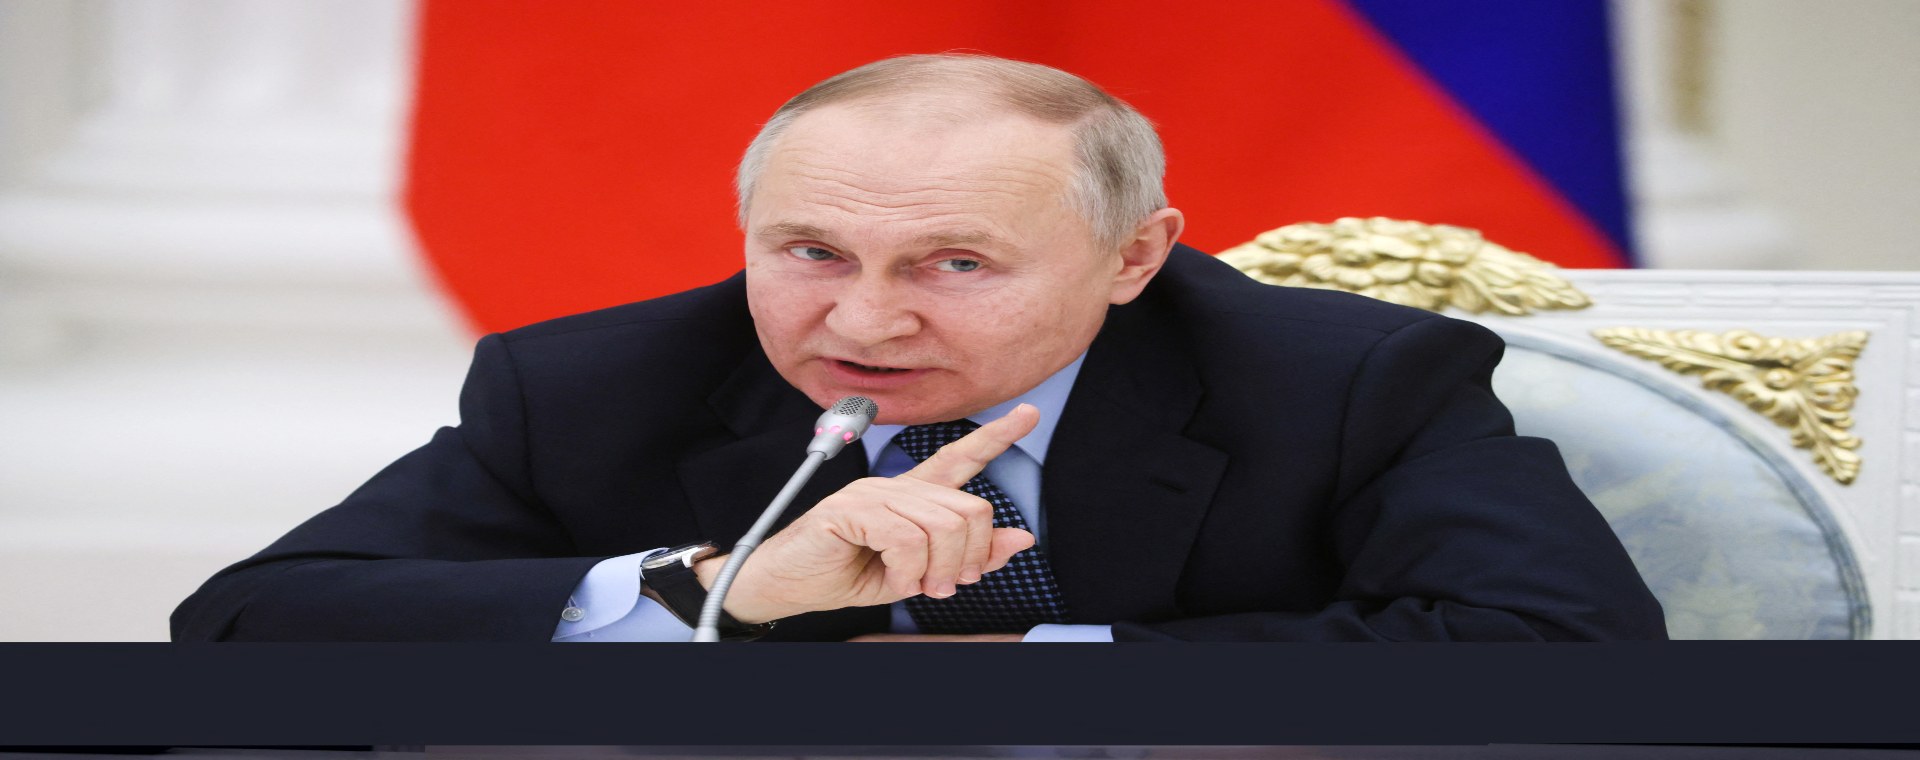  Kalahkan Vladimir Putin, Sosok Ini Jadi Orang Paling Populer di Rusia Sekarang